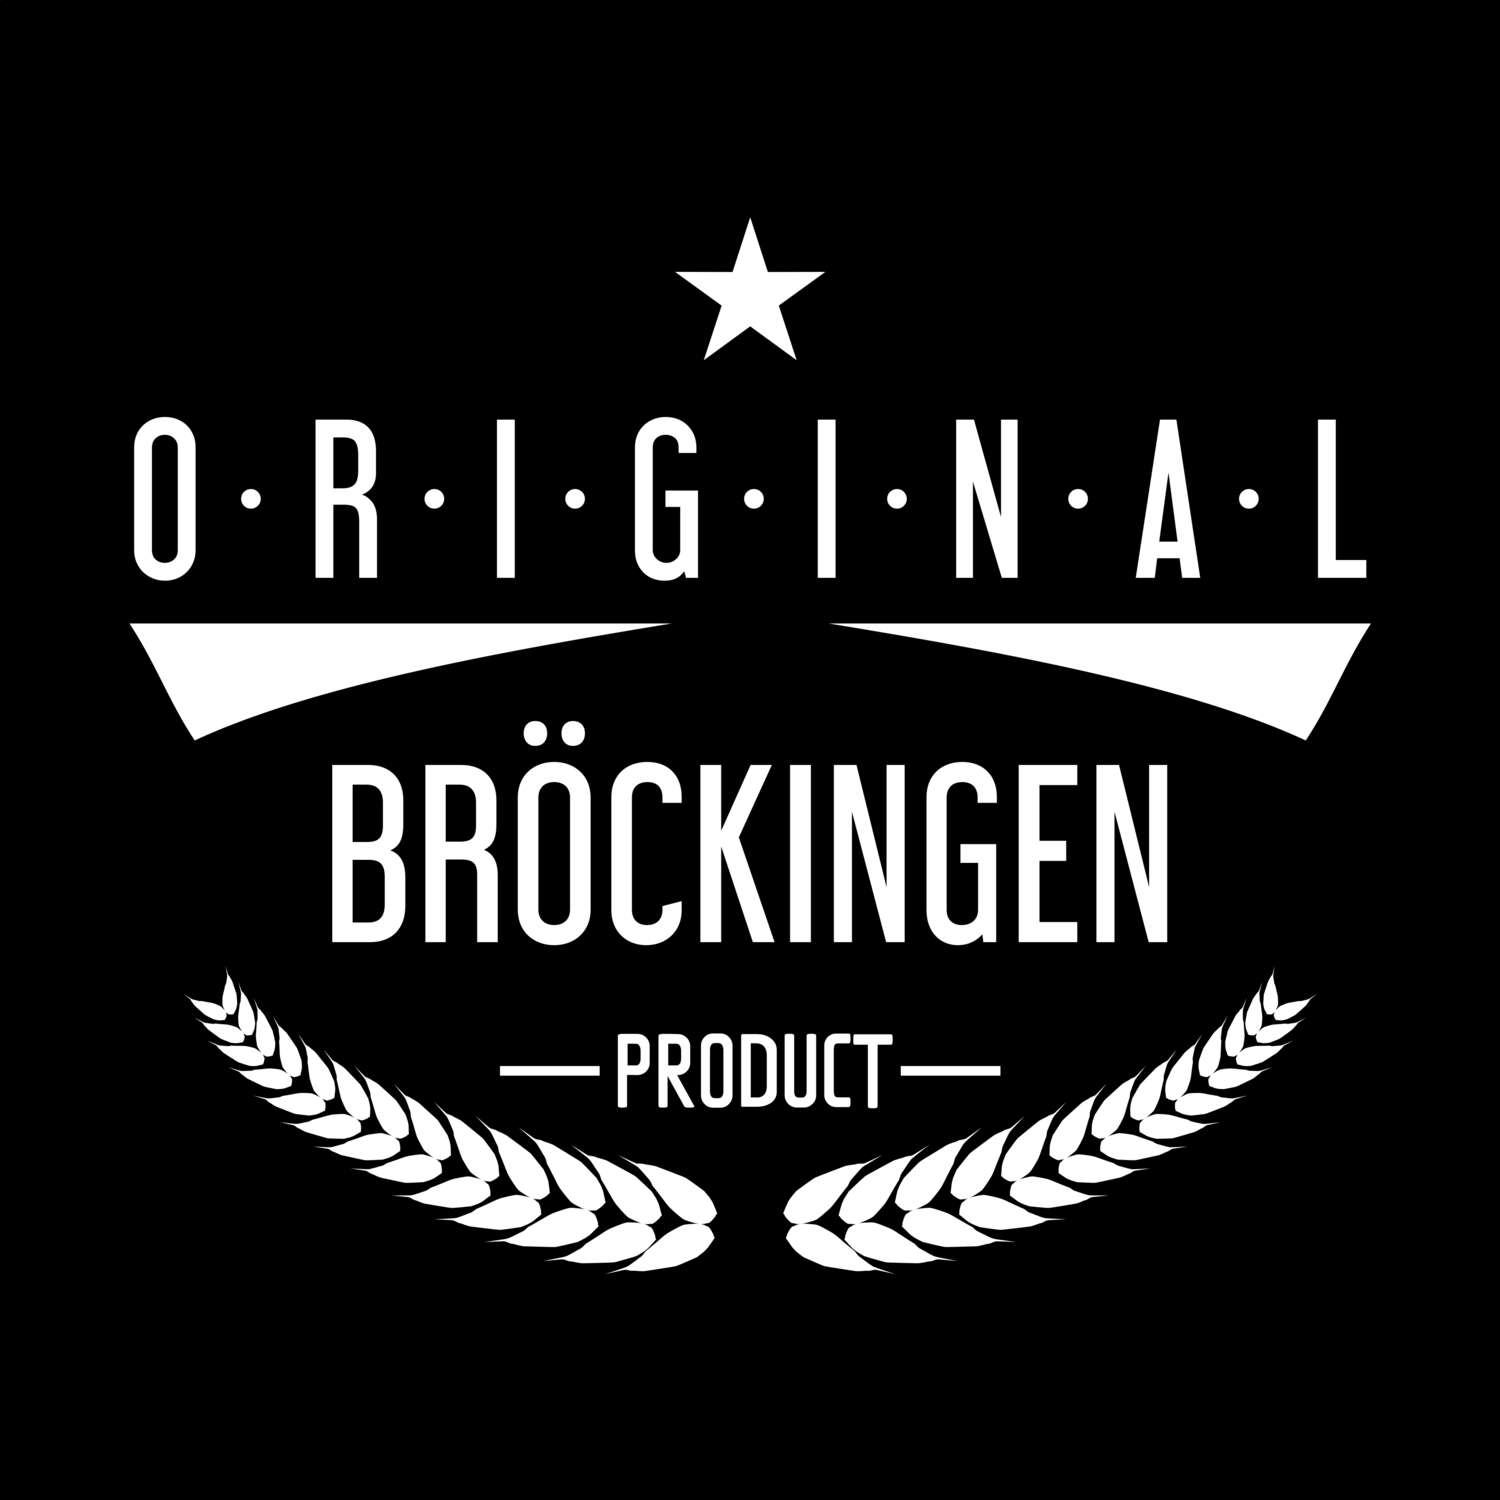 Bröckingen T-Shirt »Original Product«